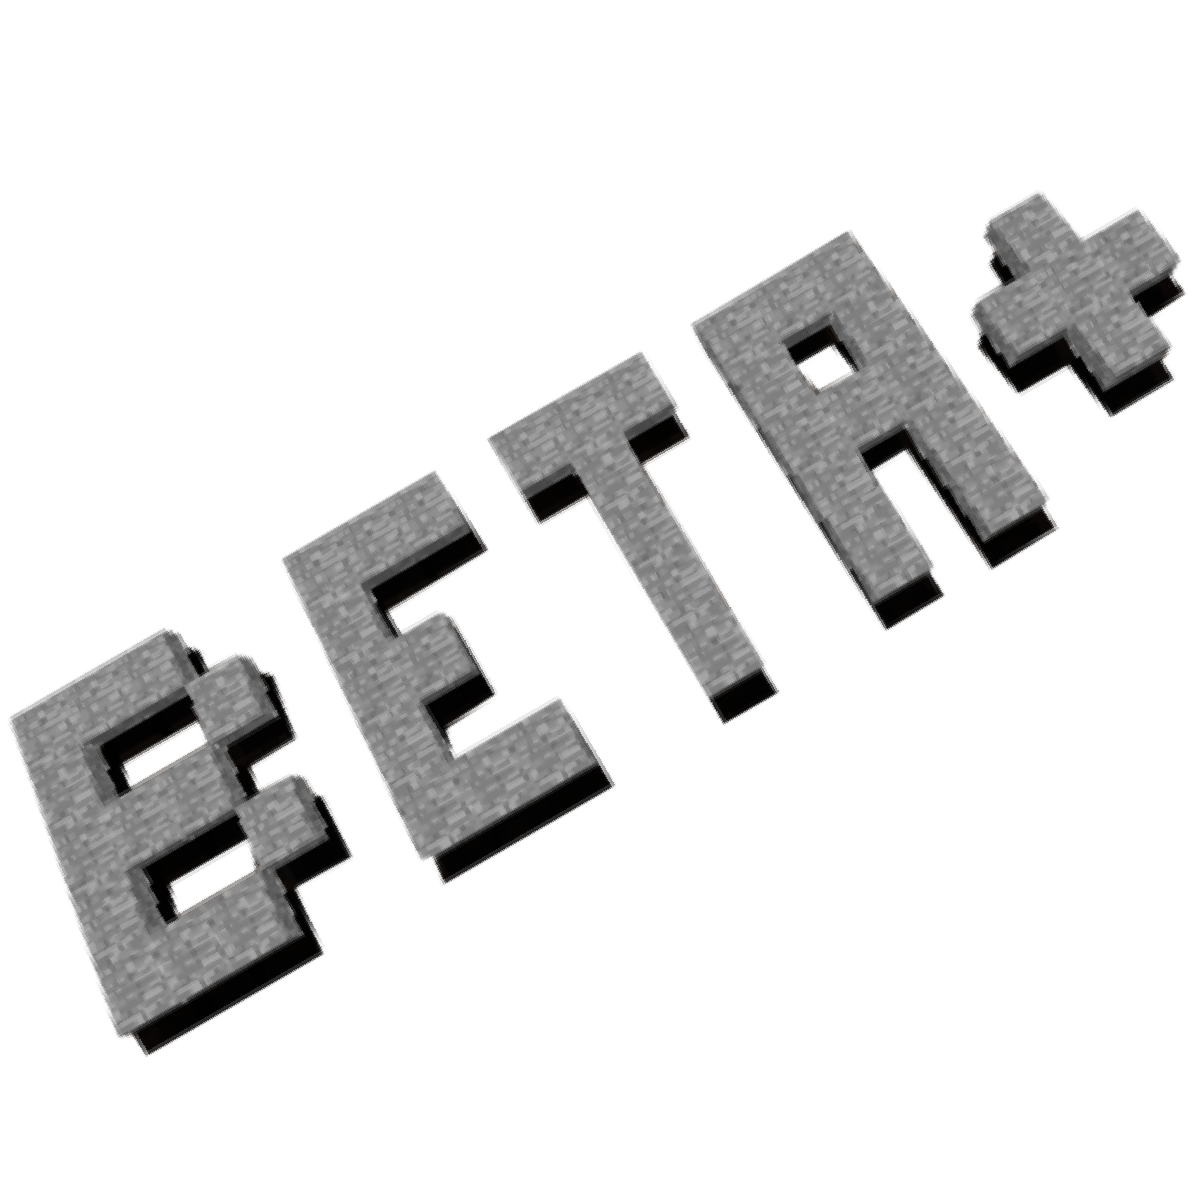 Modern Beta [1.16.5] -- Create Beta-like worlds with modern biomes